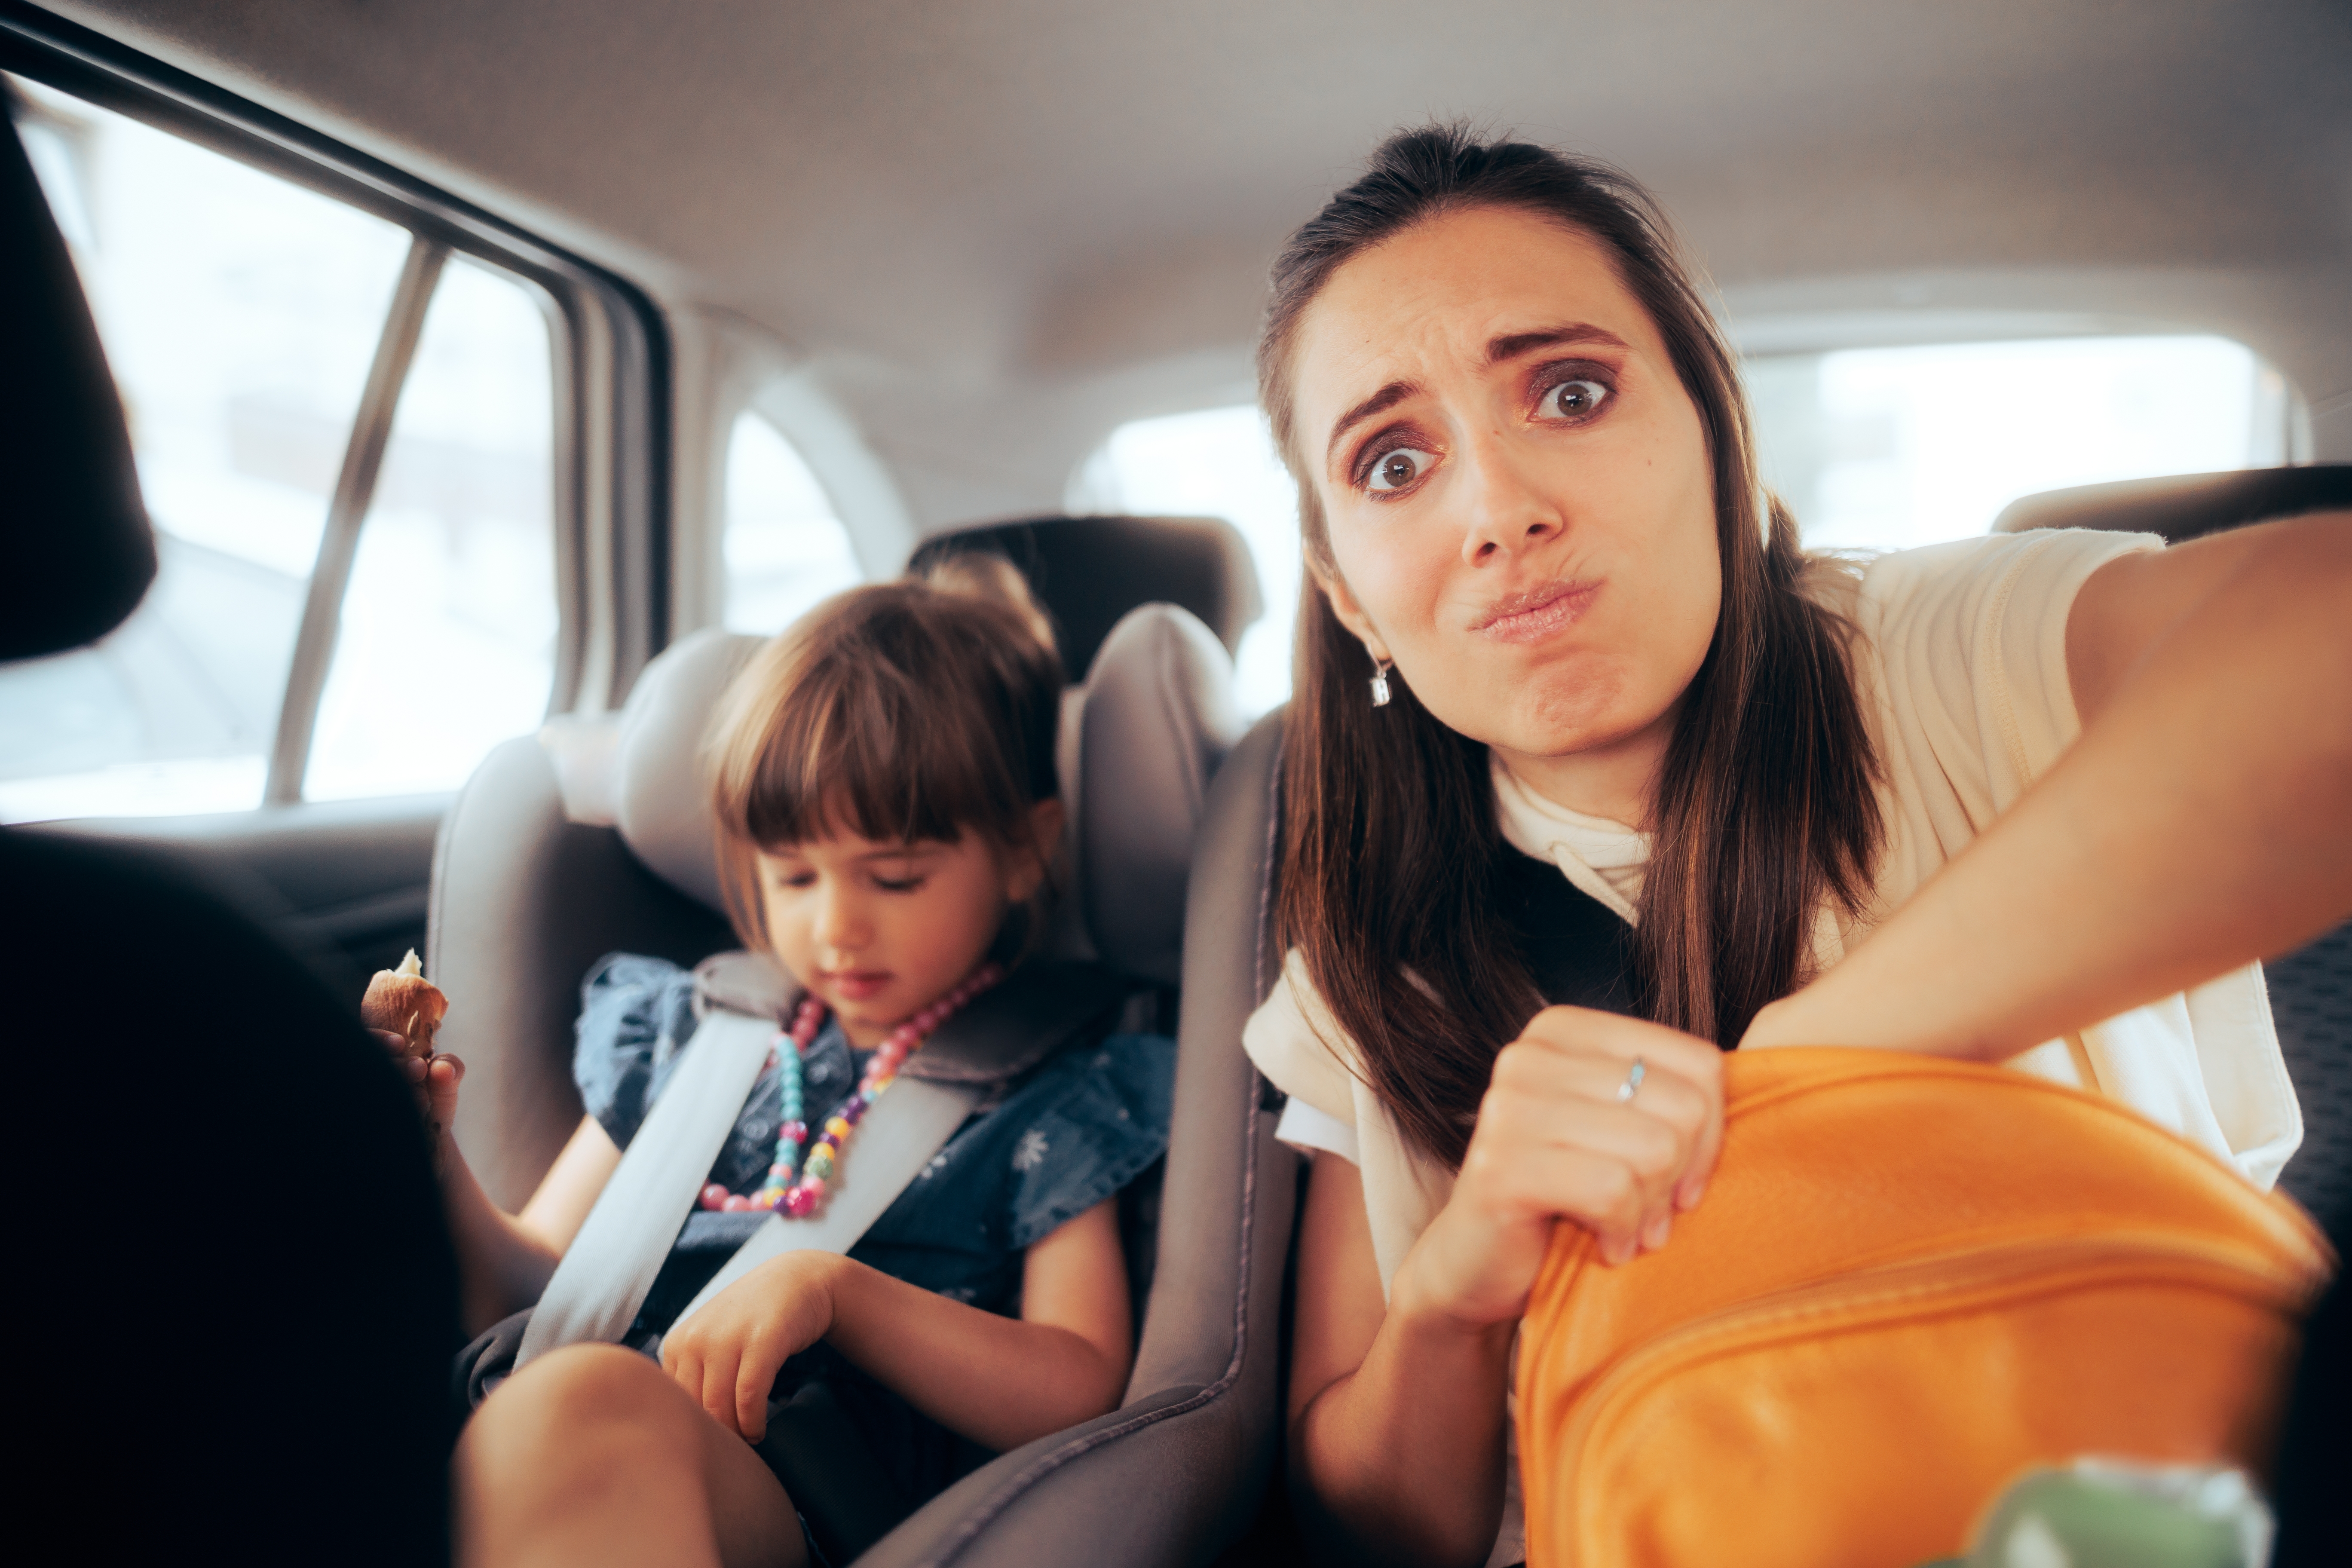 Uma mulher estressada sentada em um carro com uma menina | Fonte: Shutterstock